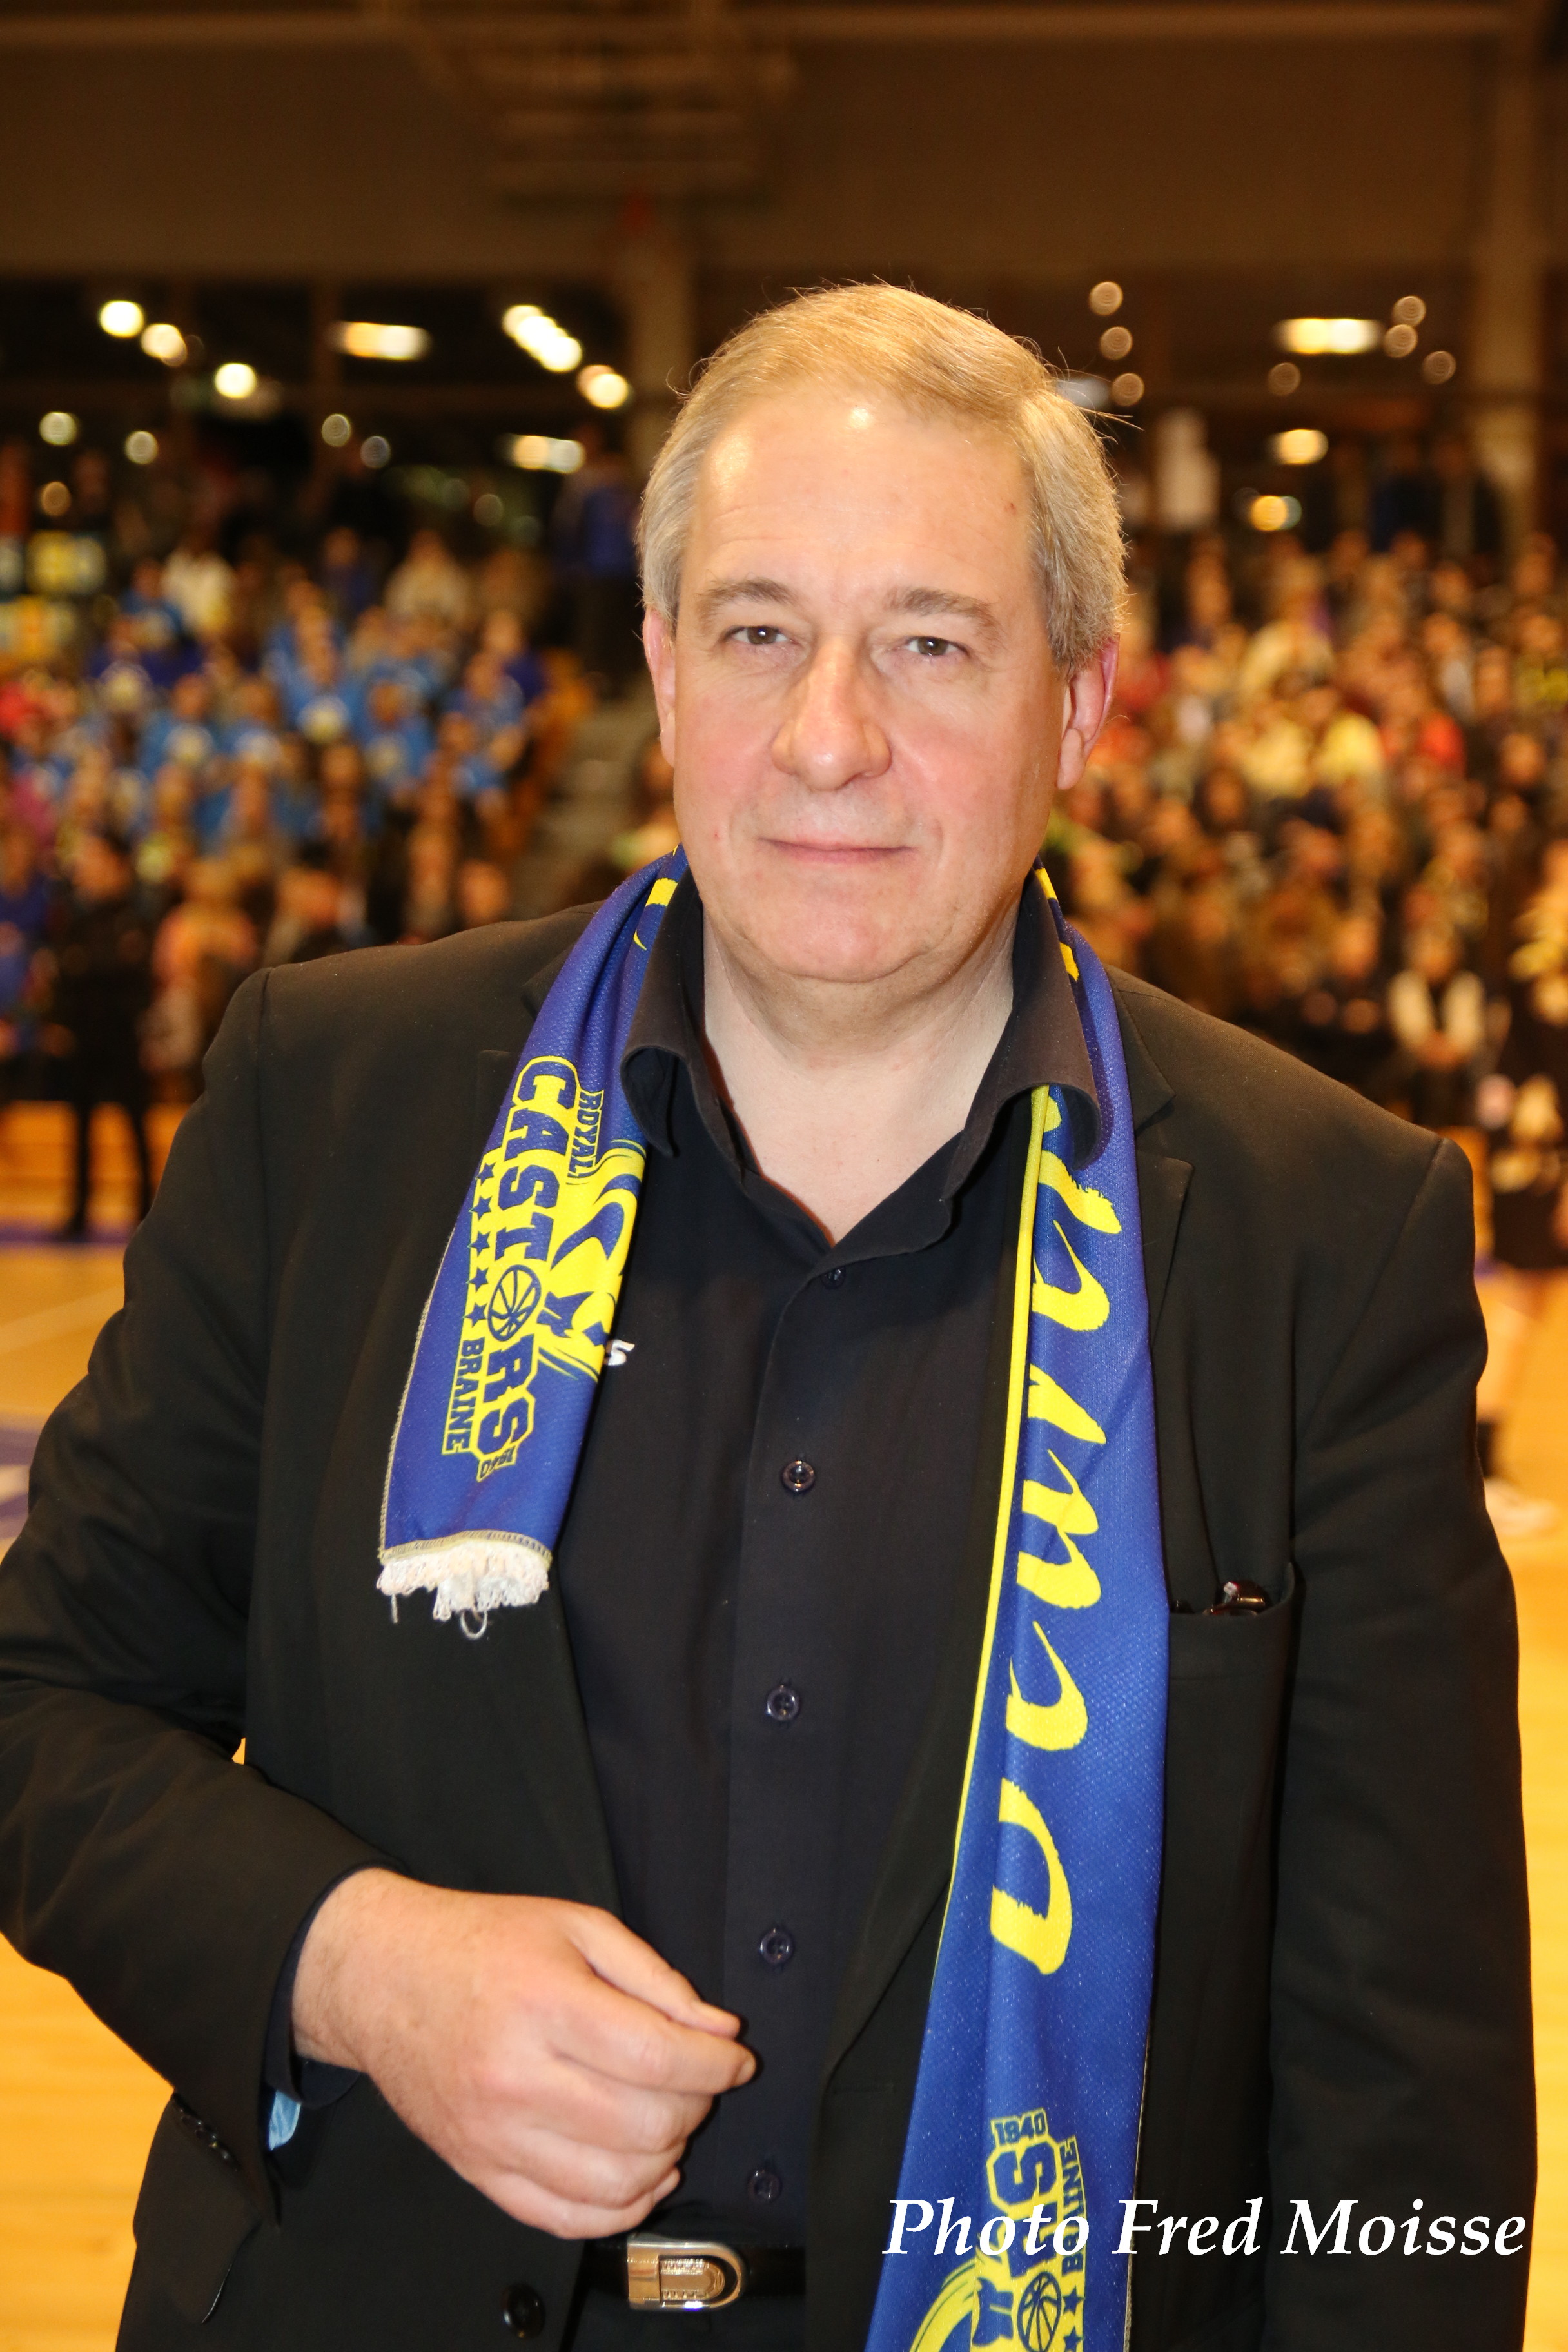 Jacques Platieau, le président